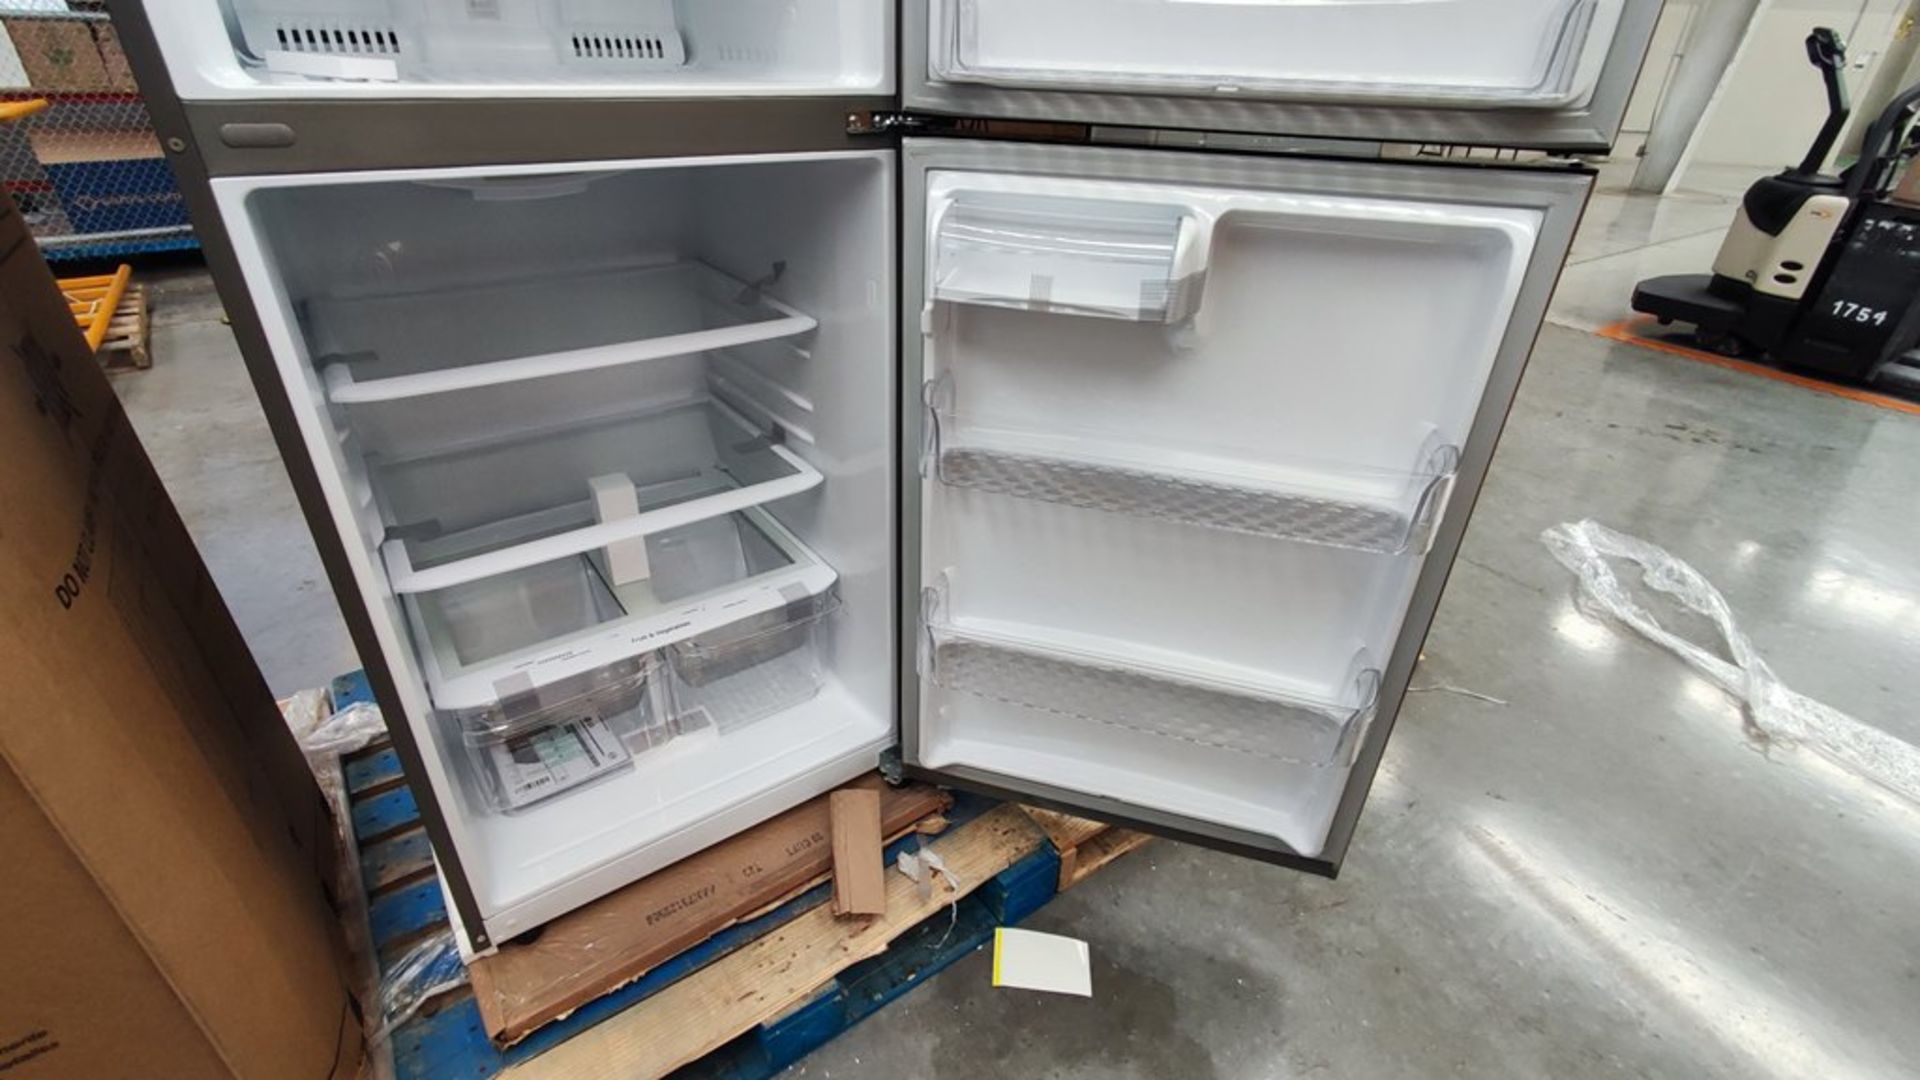 1 Refrigerador Marca LG, Modelo LT57BPSX, Serie 111MRXX34994, Color Gris, Favor de inspeccionar. (N - Image 9 of 11